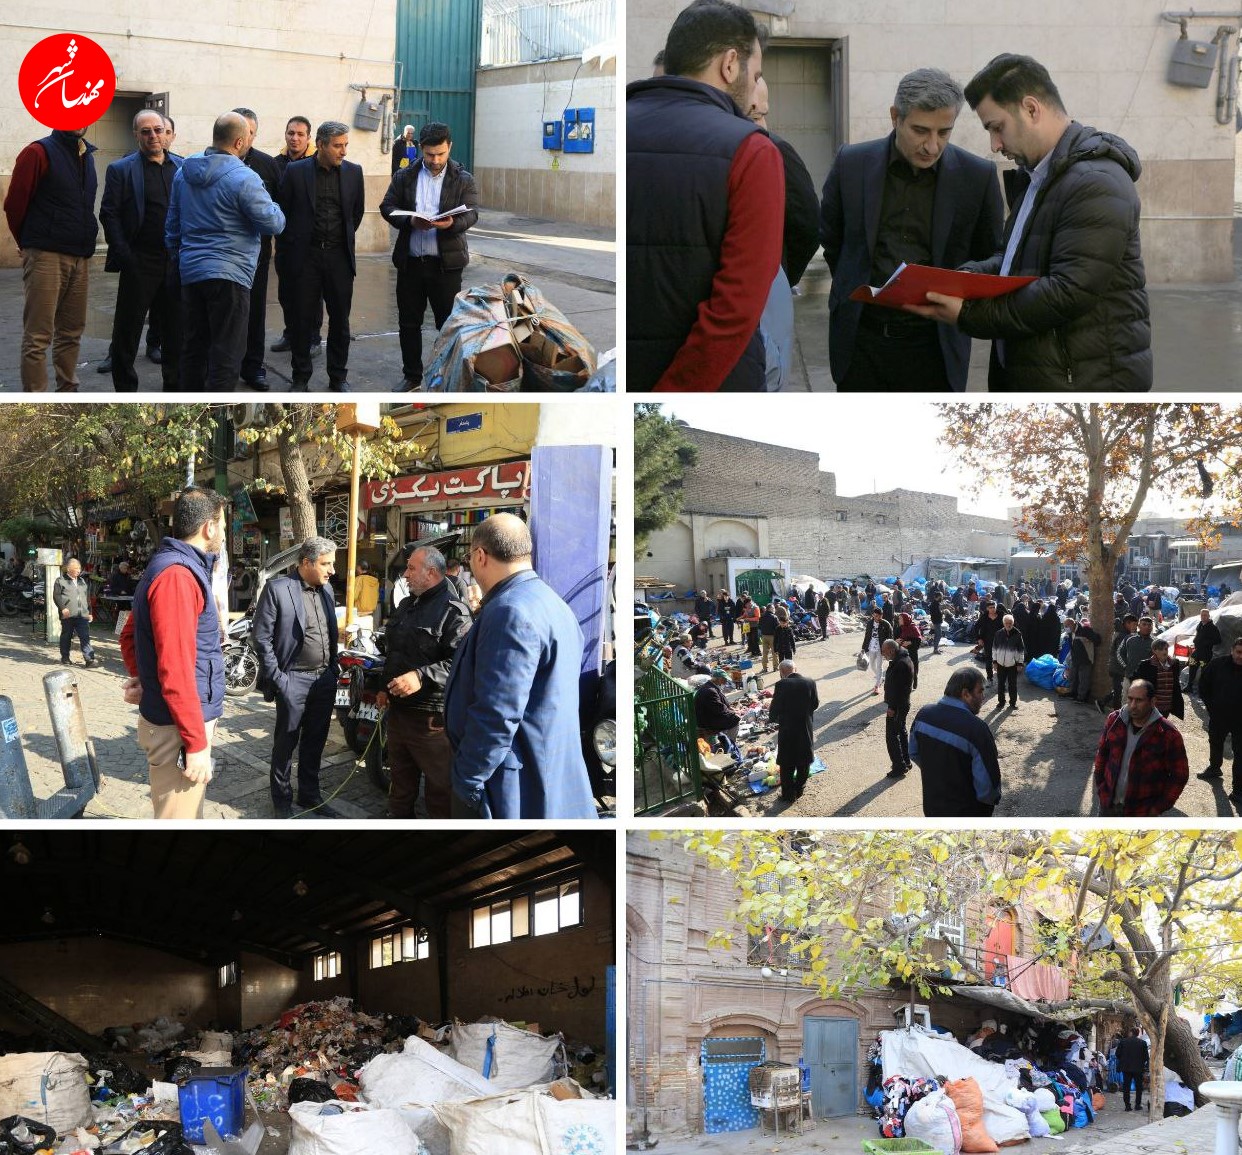 شهردار مطقه 12 در بازدید از بازار کهننه فروشان تاکید کرد:مسئله مولدسازی املاک در منطقه ضروری است